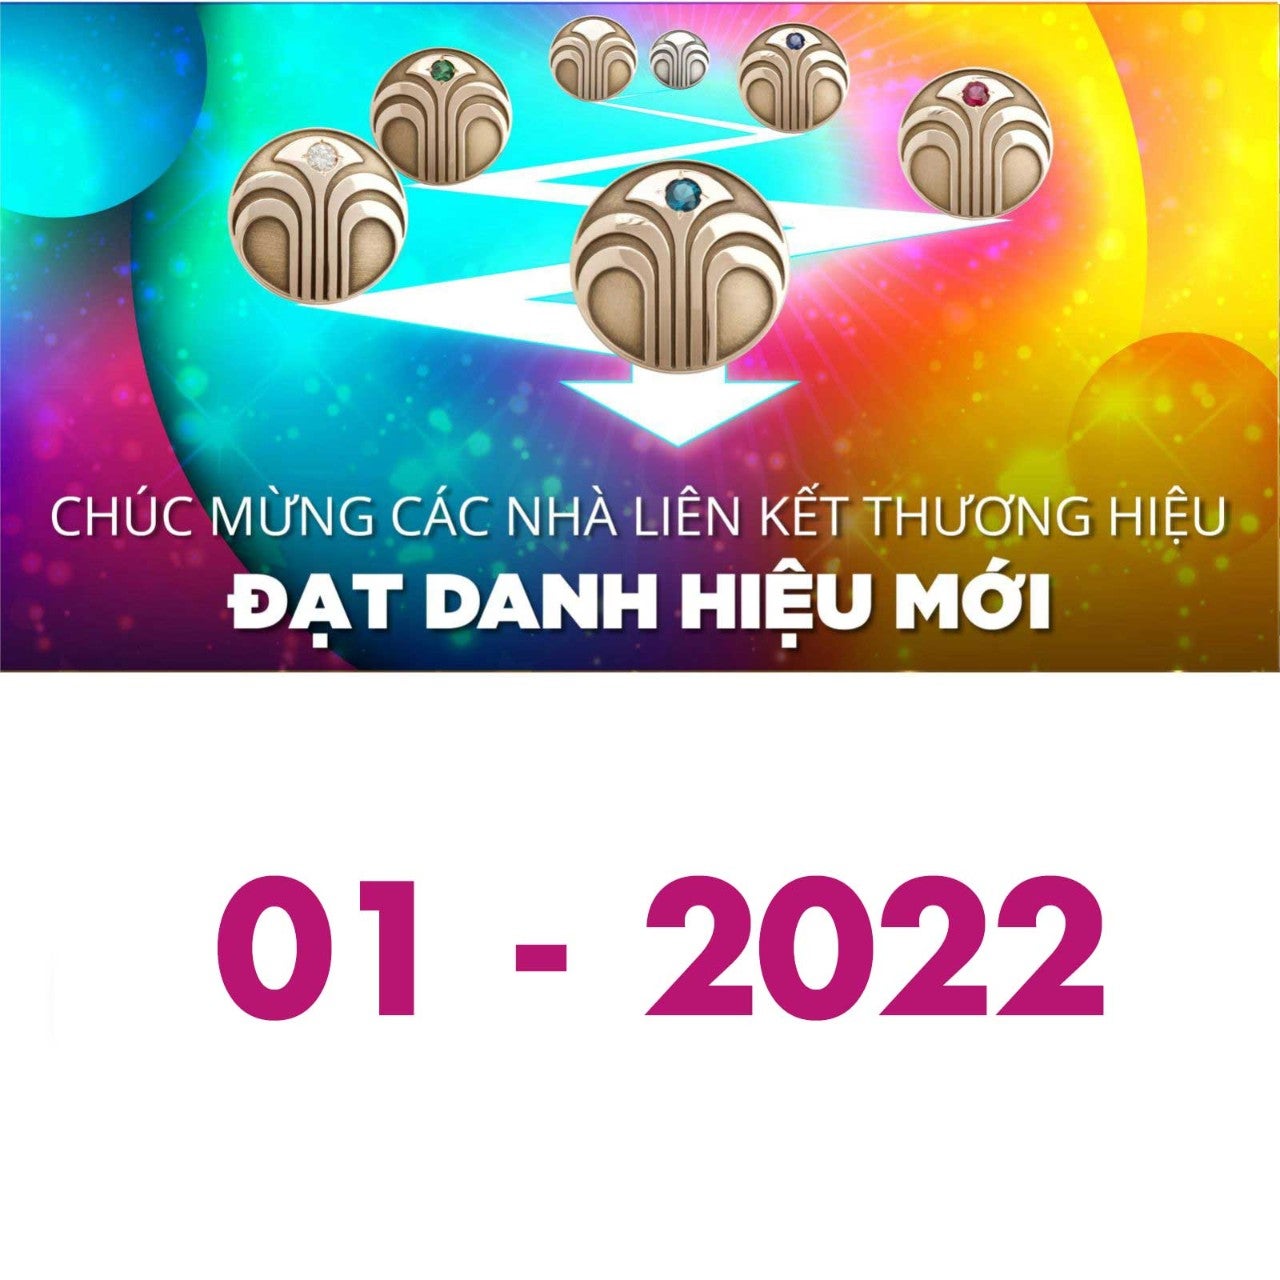 202201